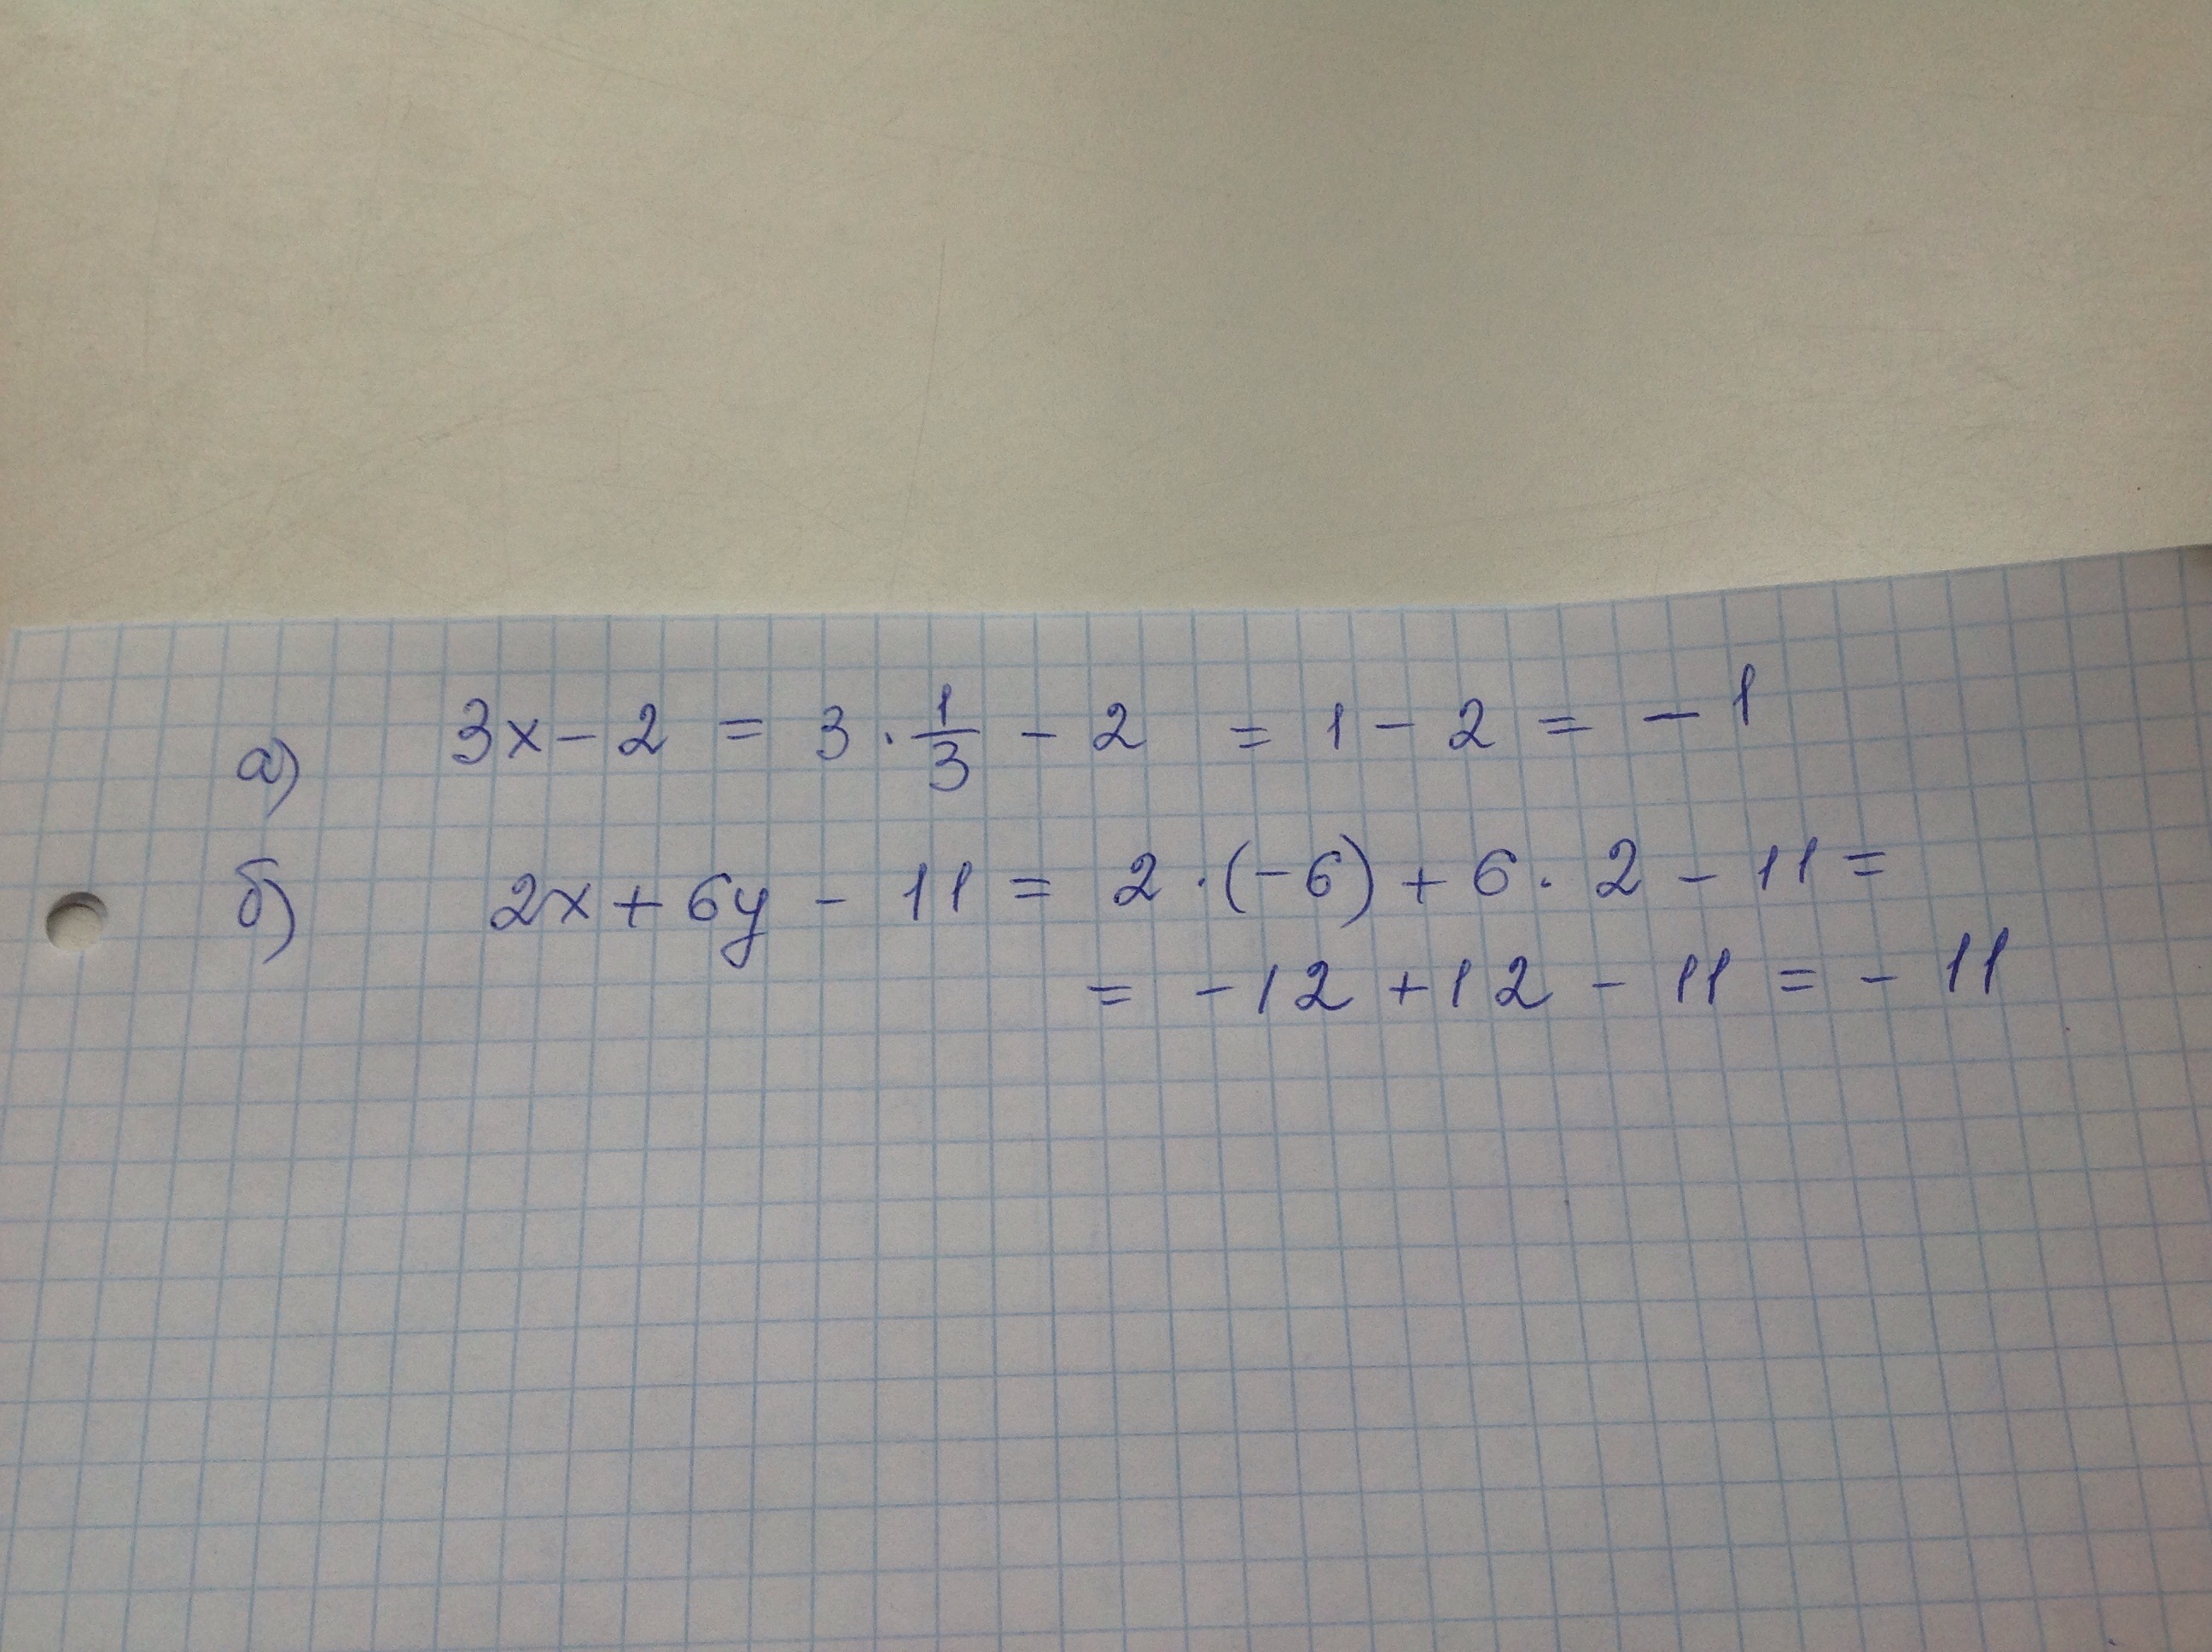 5x 3 2x 11 0. 2 X 1 3x при x 1.2. |3x-1|-2 при x=2,1. 3x-2 при x 1 2/3. -X+3 при x=-2.